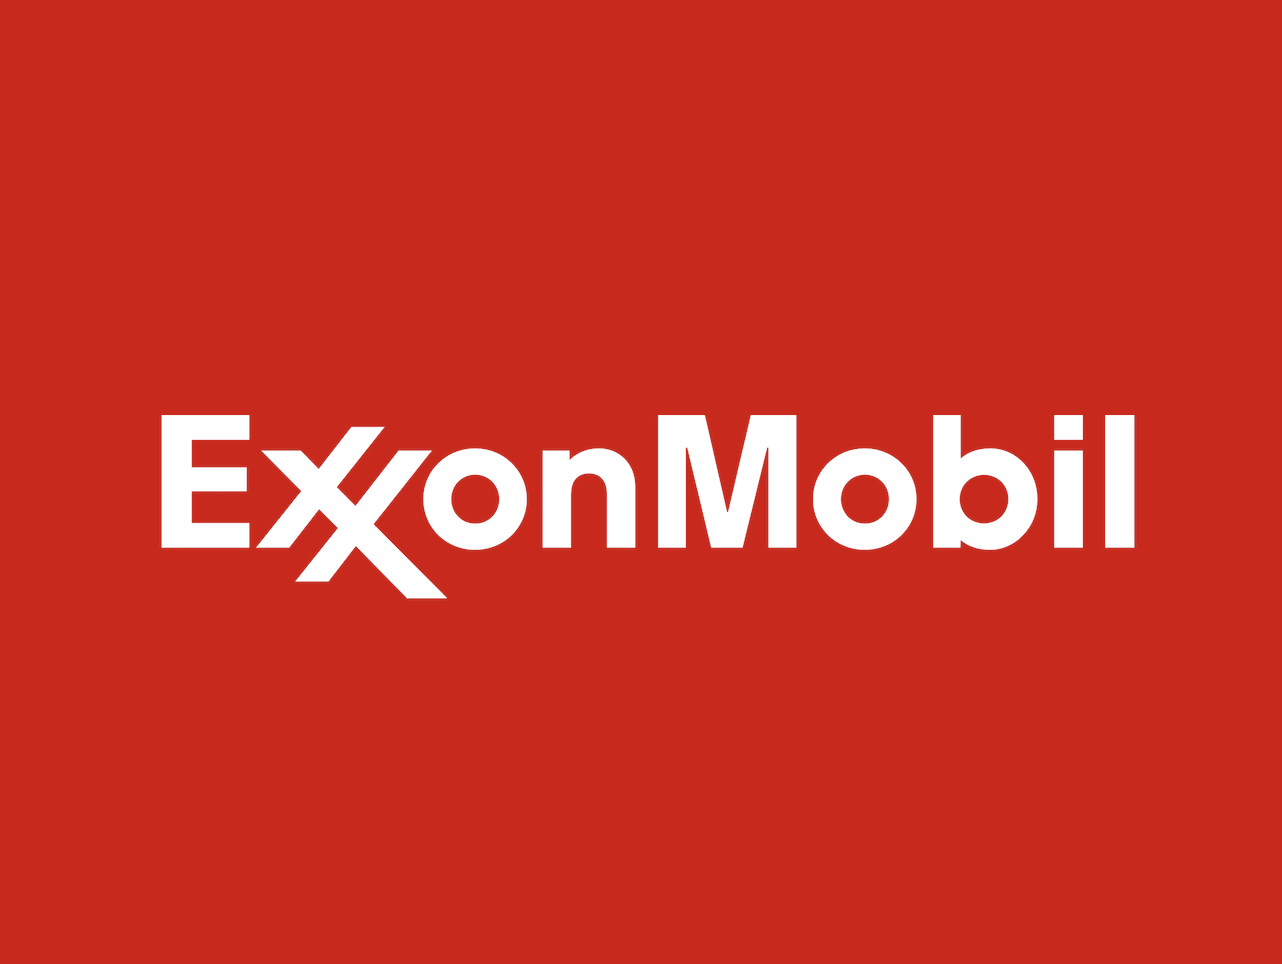 apply-to-2021-exxonmobil-loft-fellowship-program-announce-university-of-nebraska-lincoln